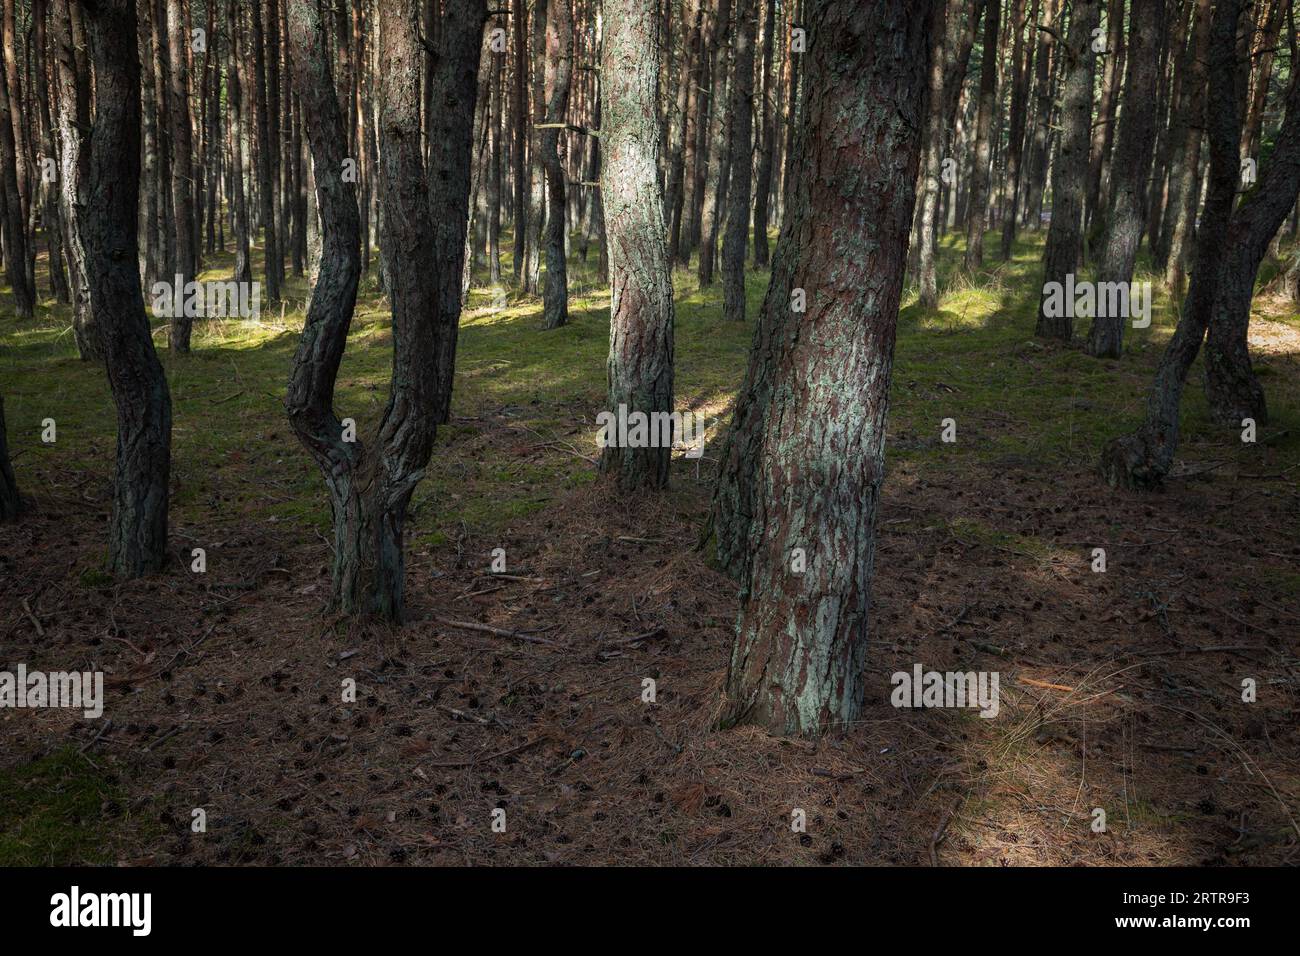 Foto paesaggistica della Foresta danzante. Foresta di pini sulla sputa curoniana nell'Oblast' di Kaliningrad, in Russia nota per i suoi alberi stranamente contorti Foto Stock